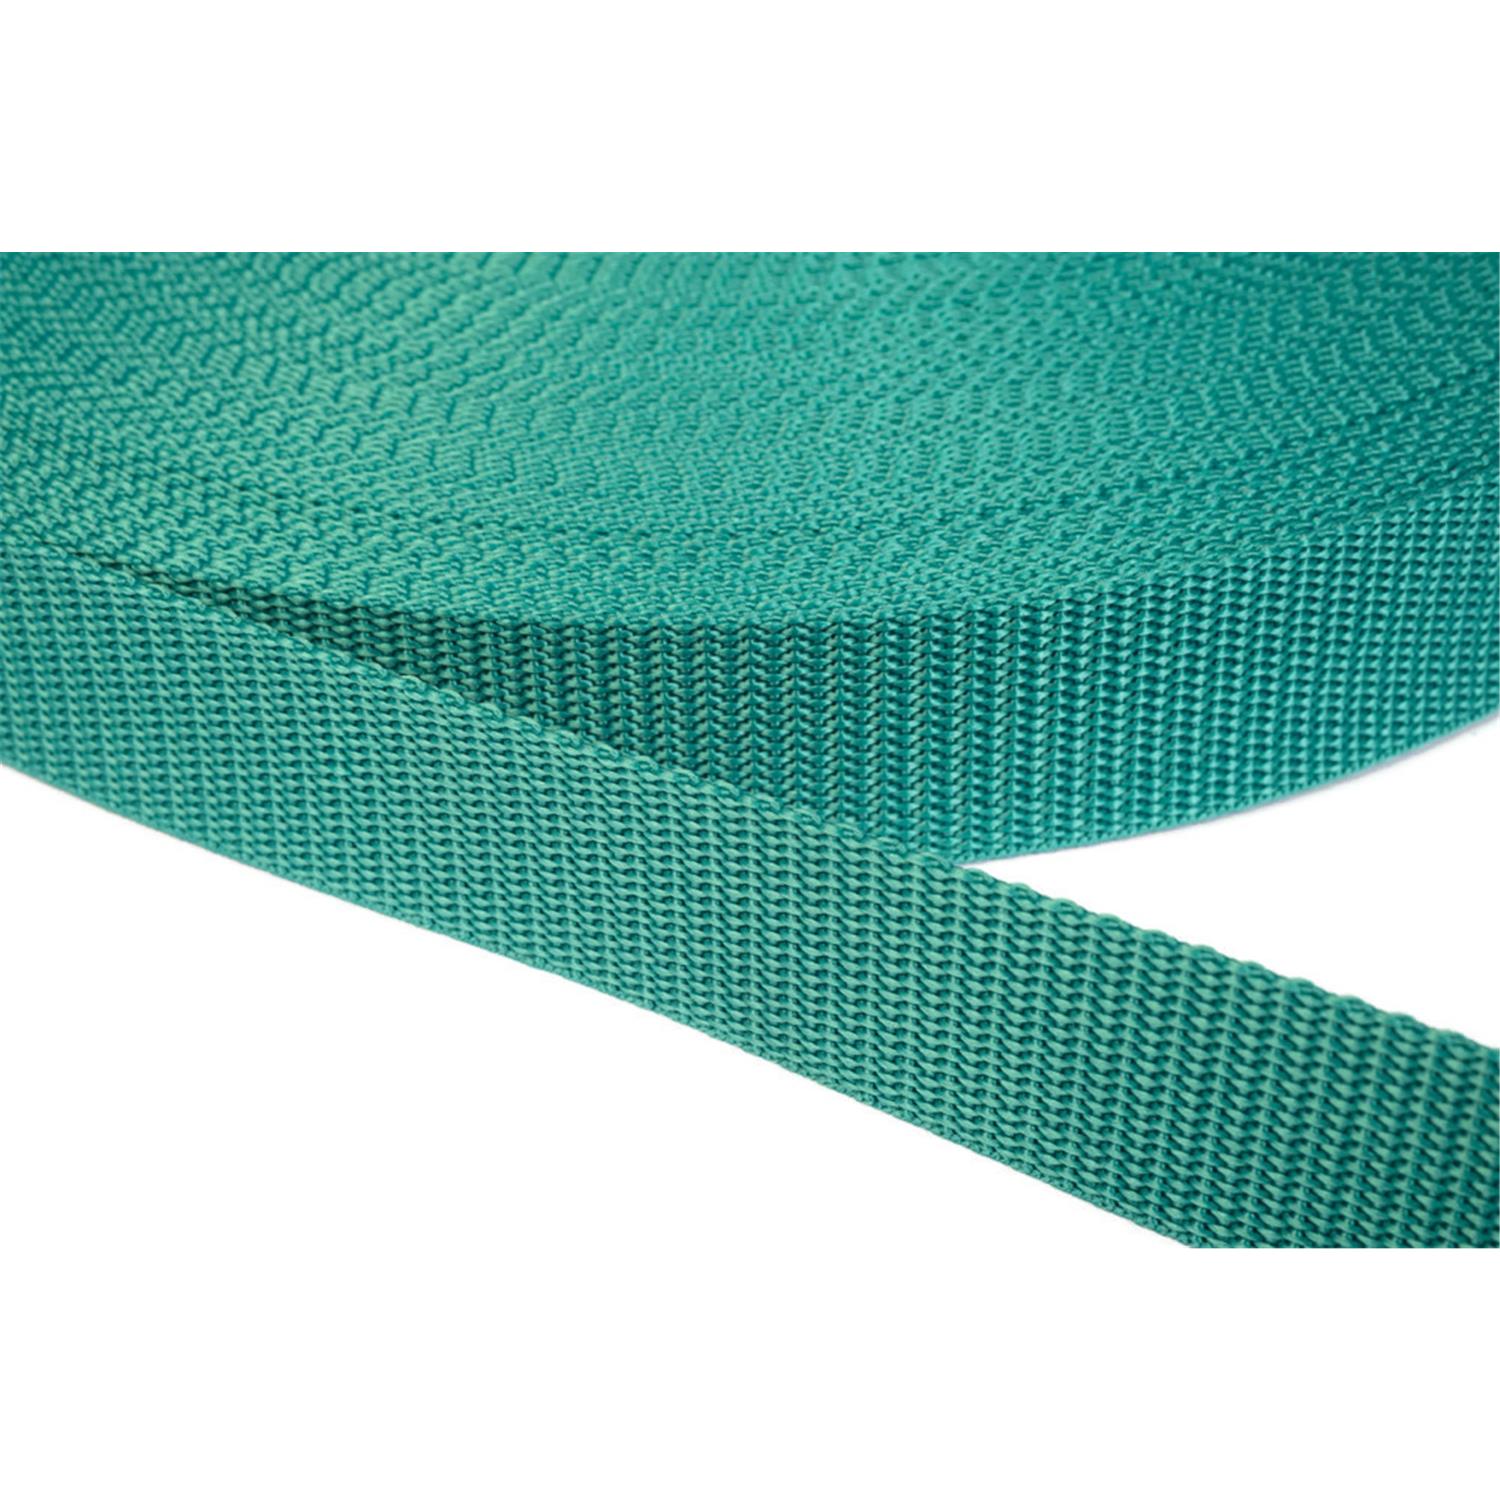 Gurtband 50mm breit aus Polypropylen in 41 Farben 31 - smaragdgrün 12 Meter